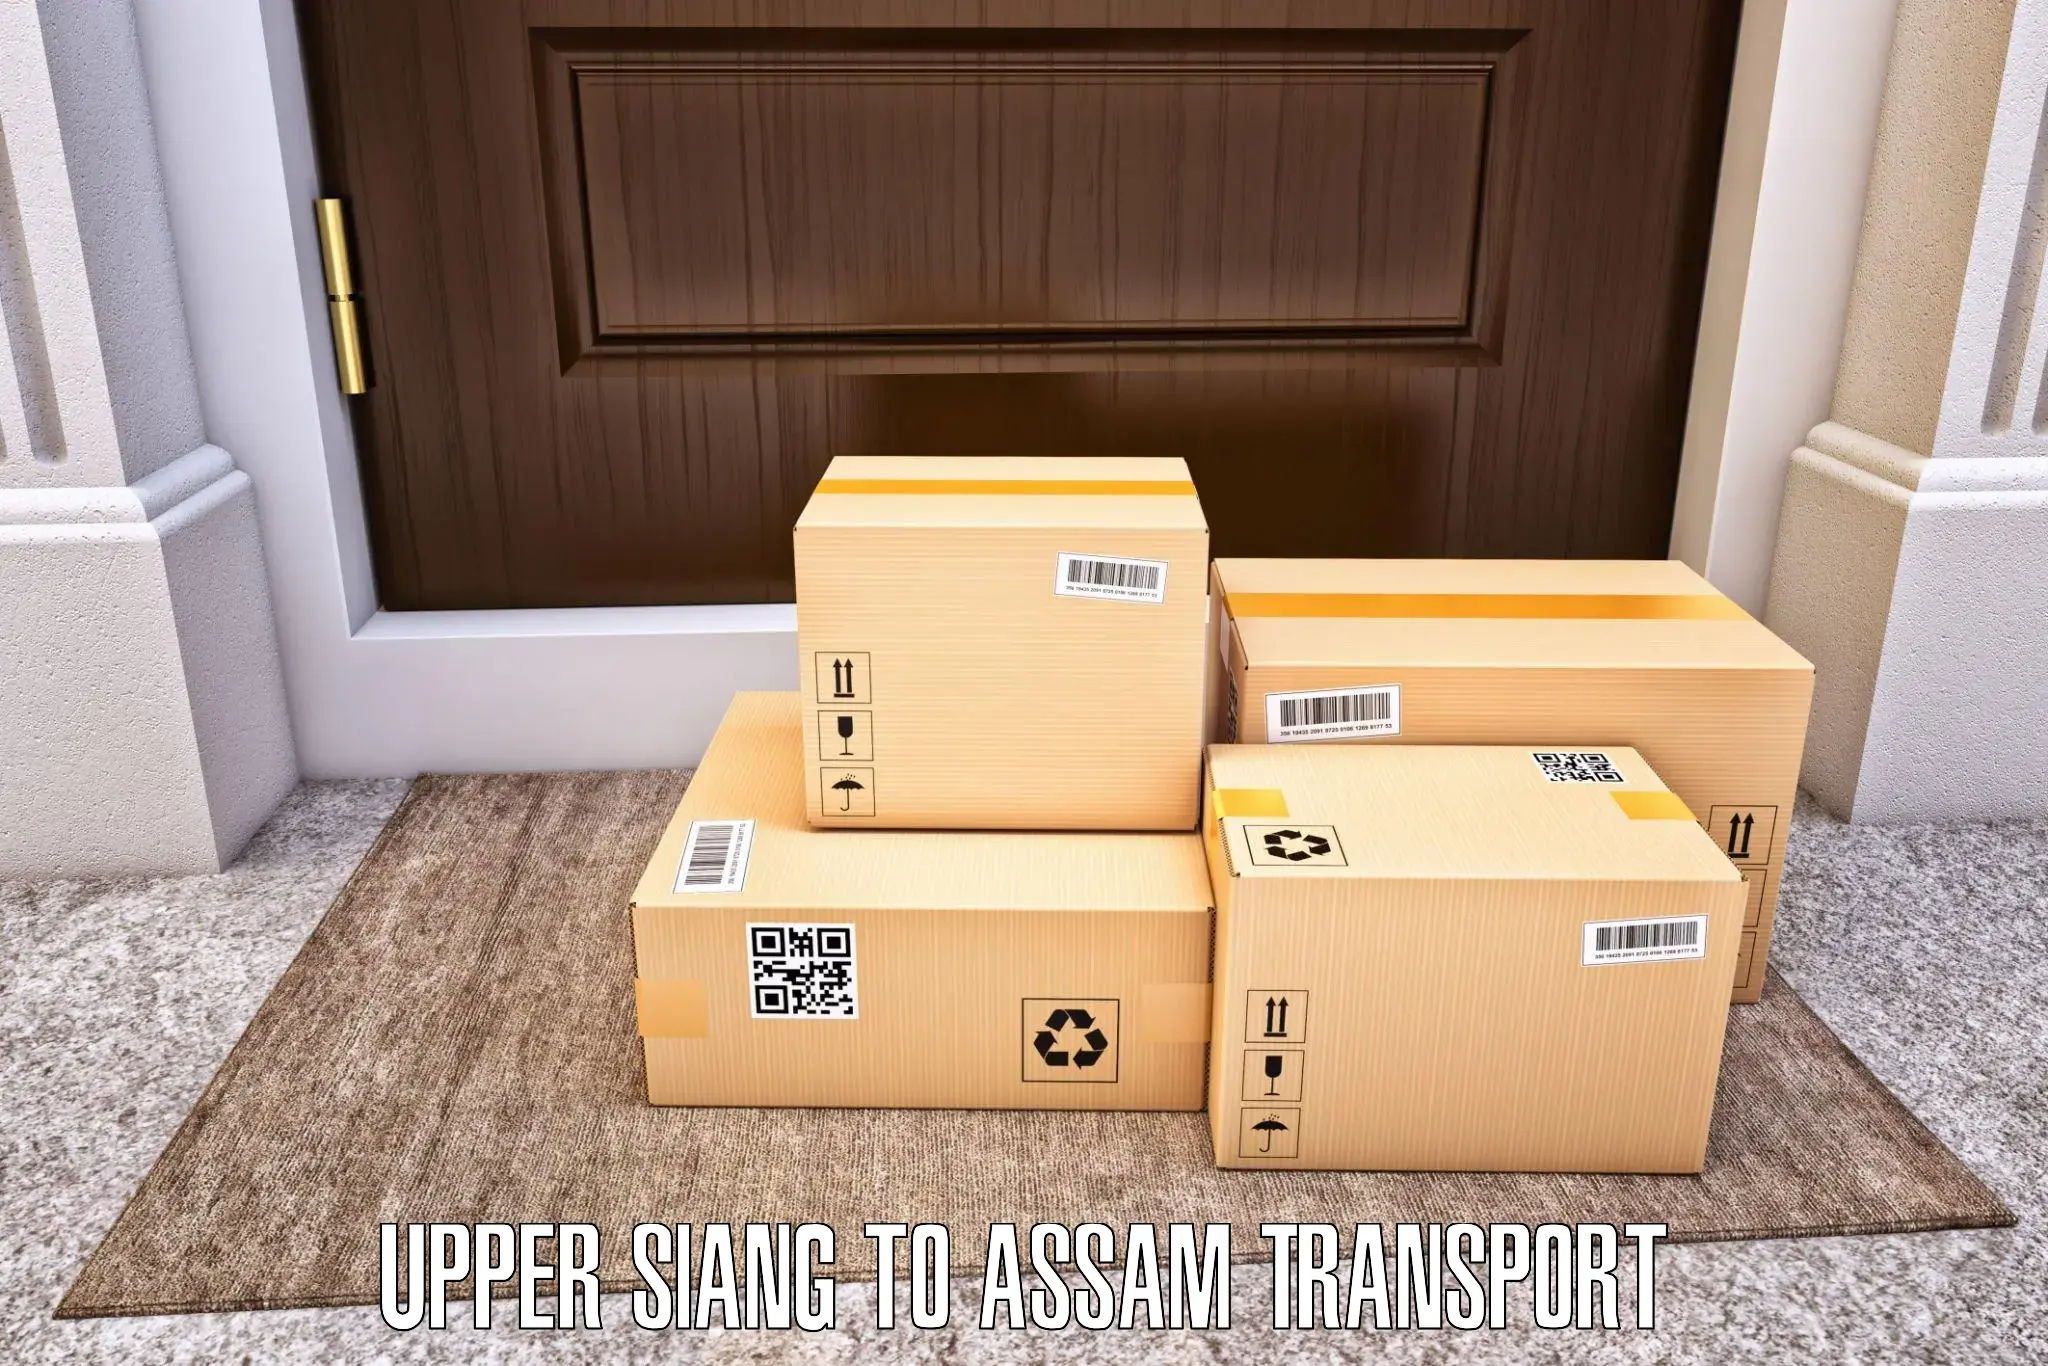 Delivery service Upper Siang to Baksha Bodoland